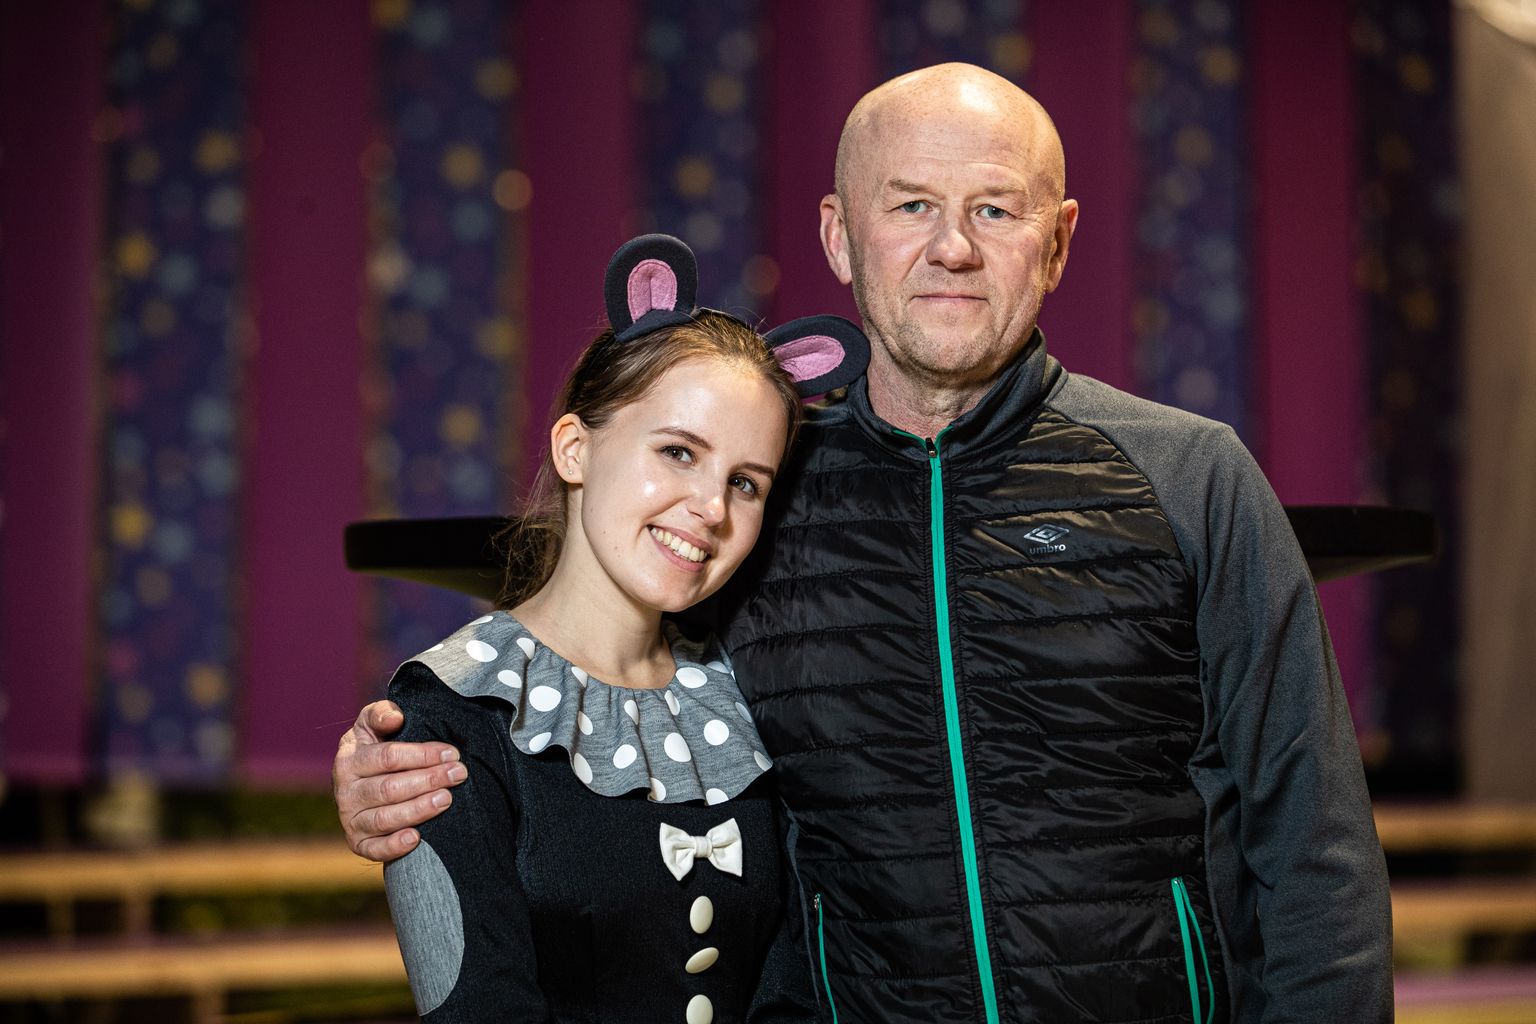 "Lotte ja vana õunapuu saladus" muusika autor Priit Pajusaar, muusikalis teeb rolli ka tütar Liisa Pajusaar.